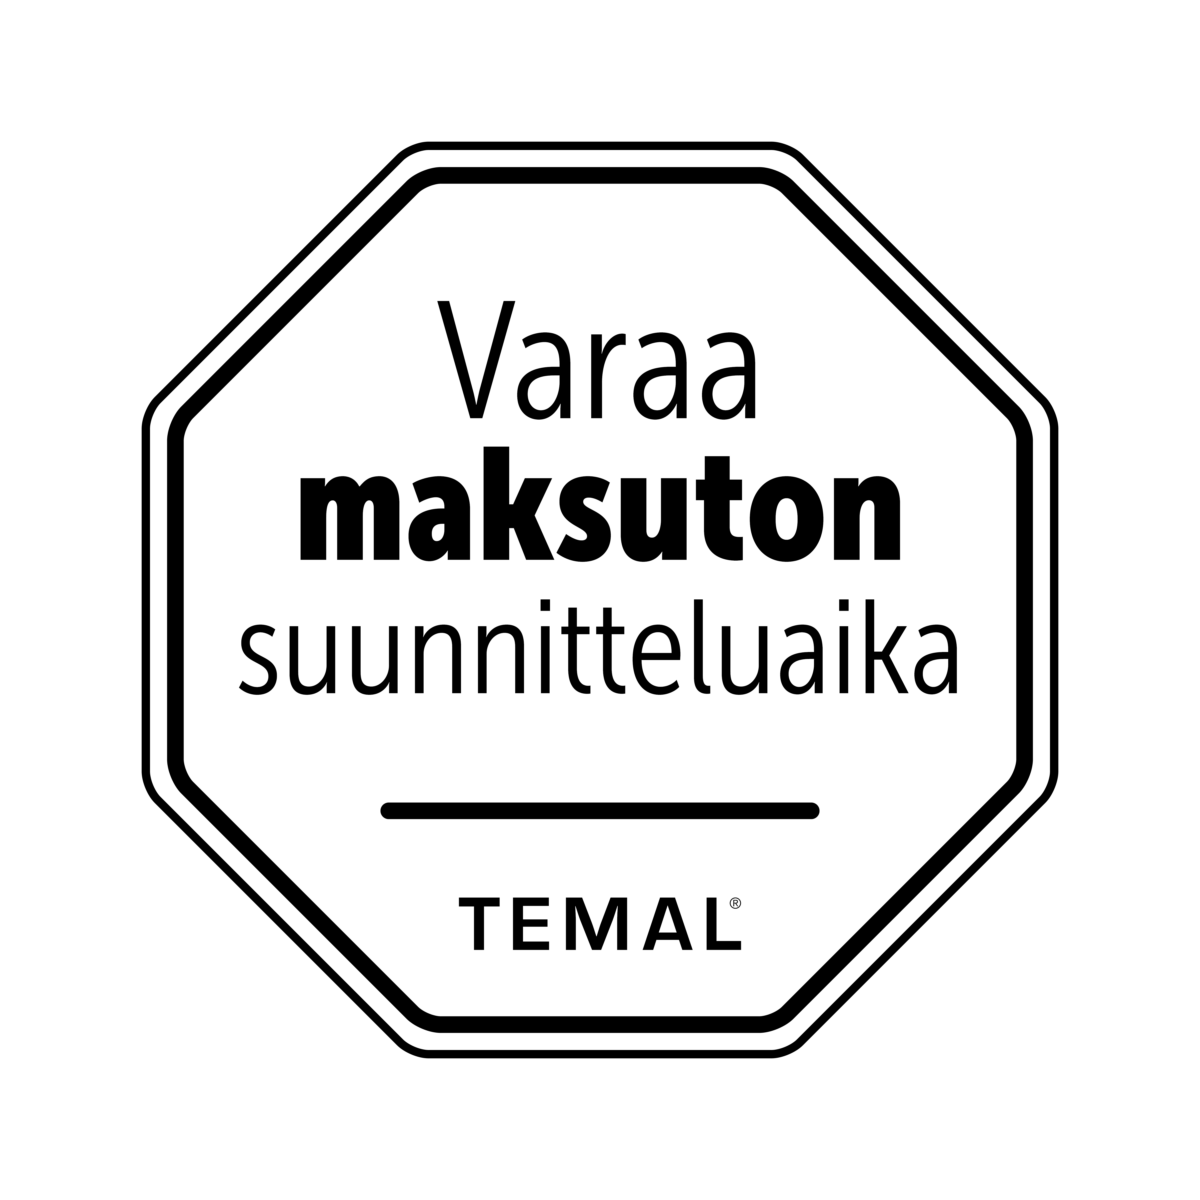 Varaa maksuton suunnitteluaika temal.fi